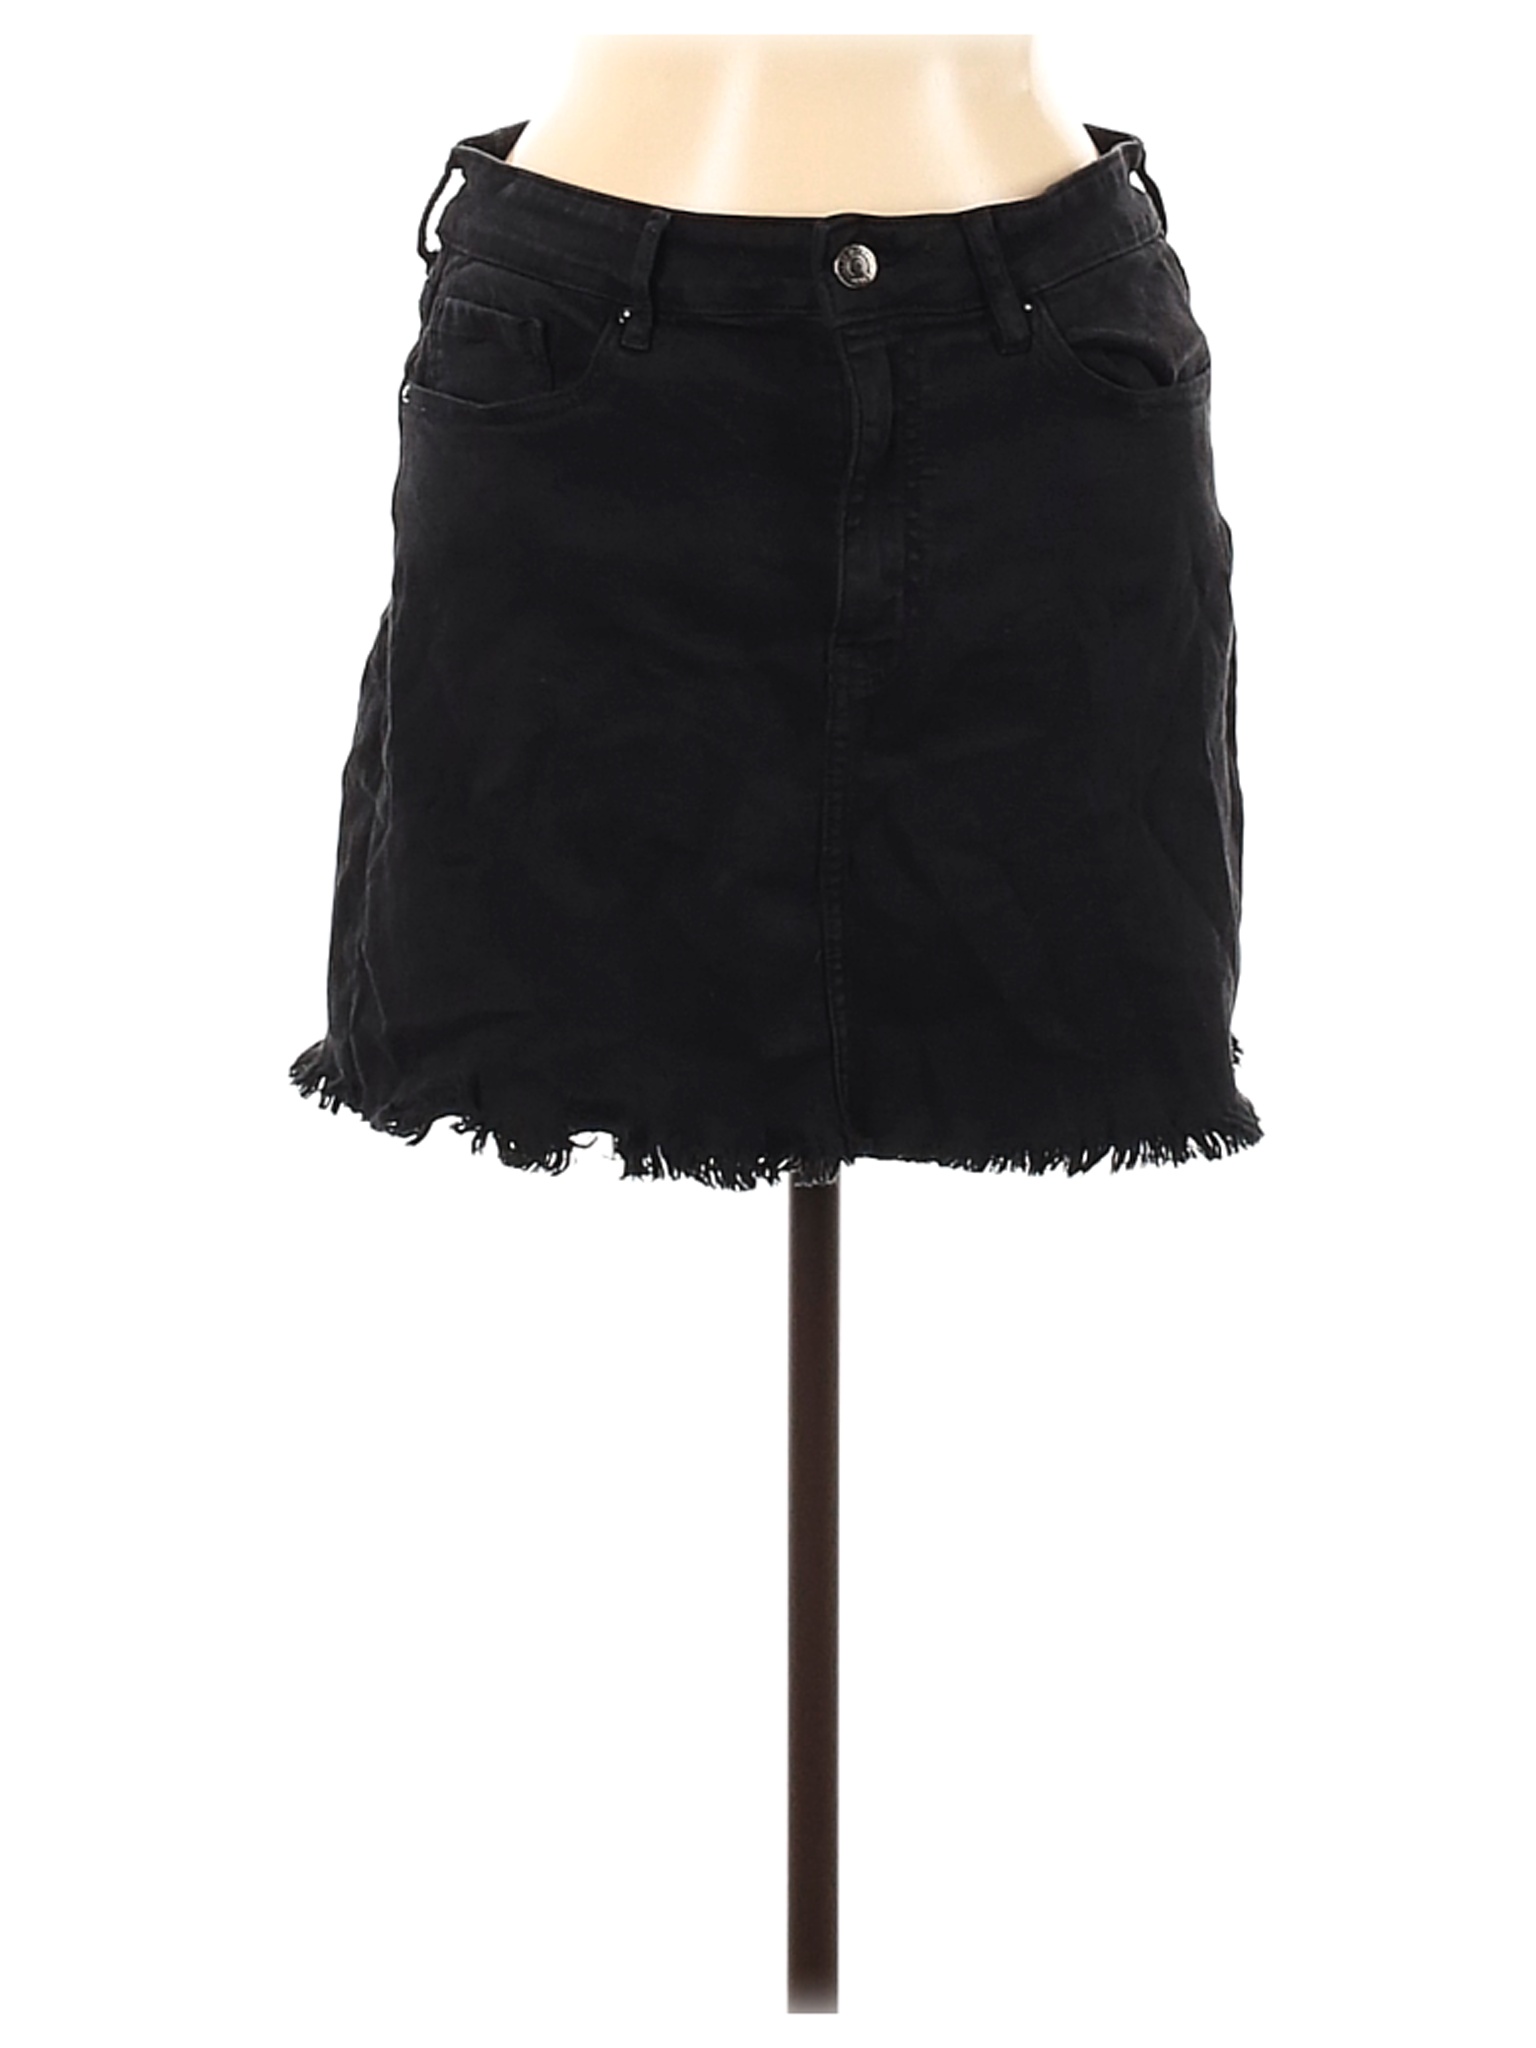 Forever 21 Women Black Denim Skirt 28W | eBay